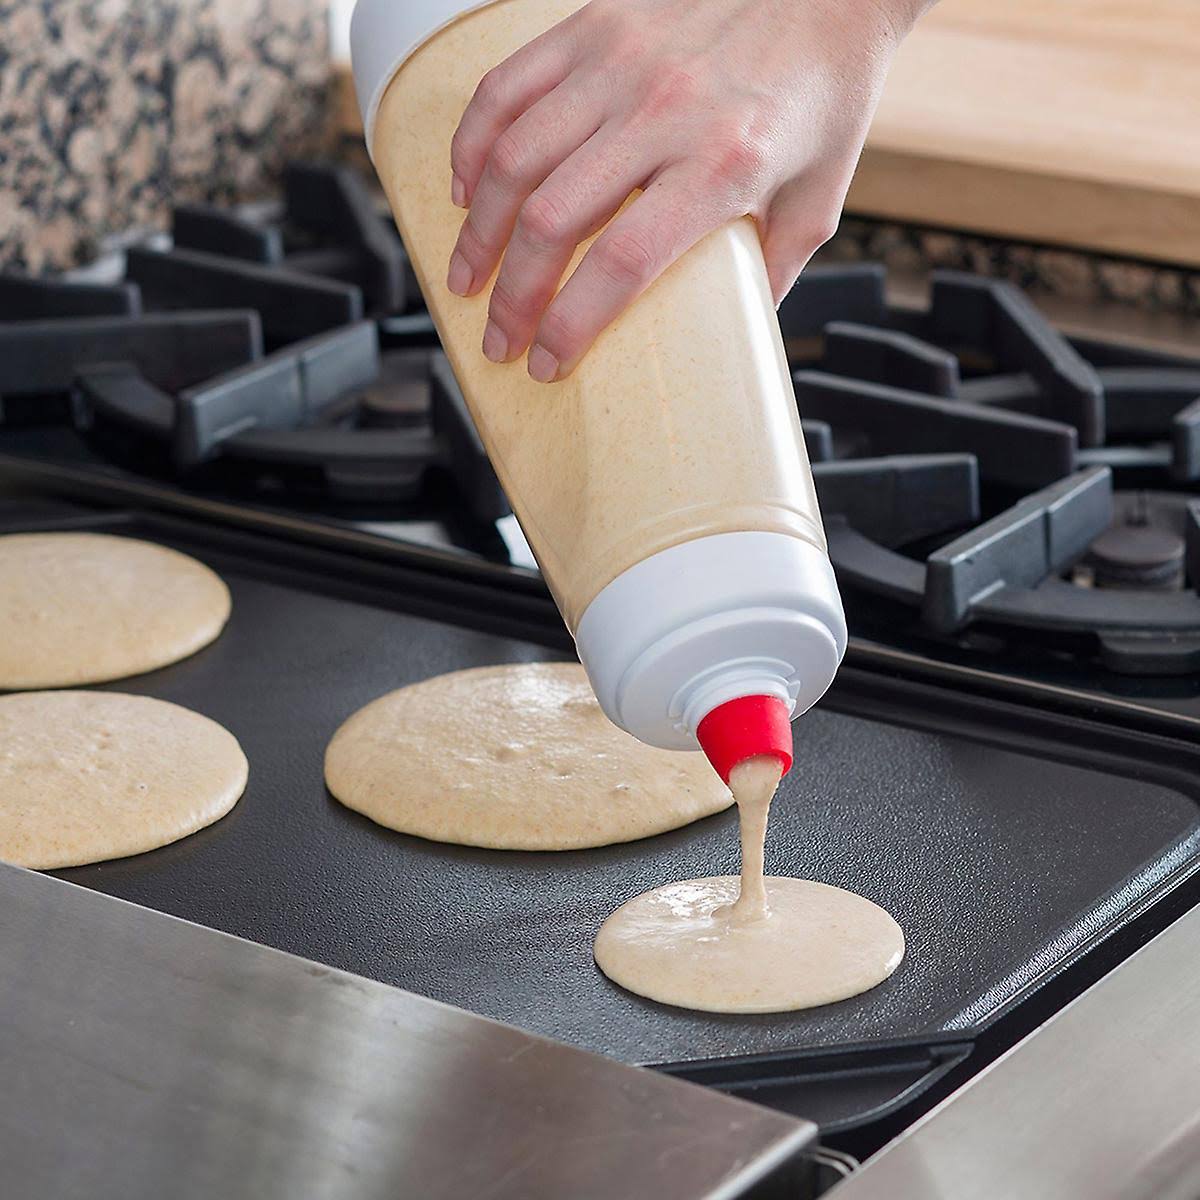 Whiskware Pancake Mixer - The Easiest Way To Make No-Mess Pancakes